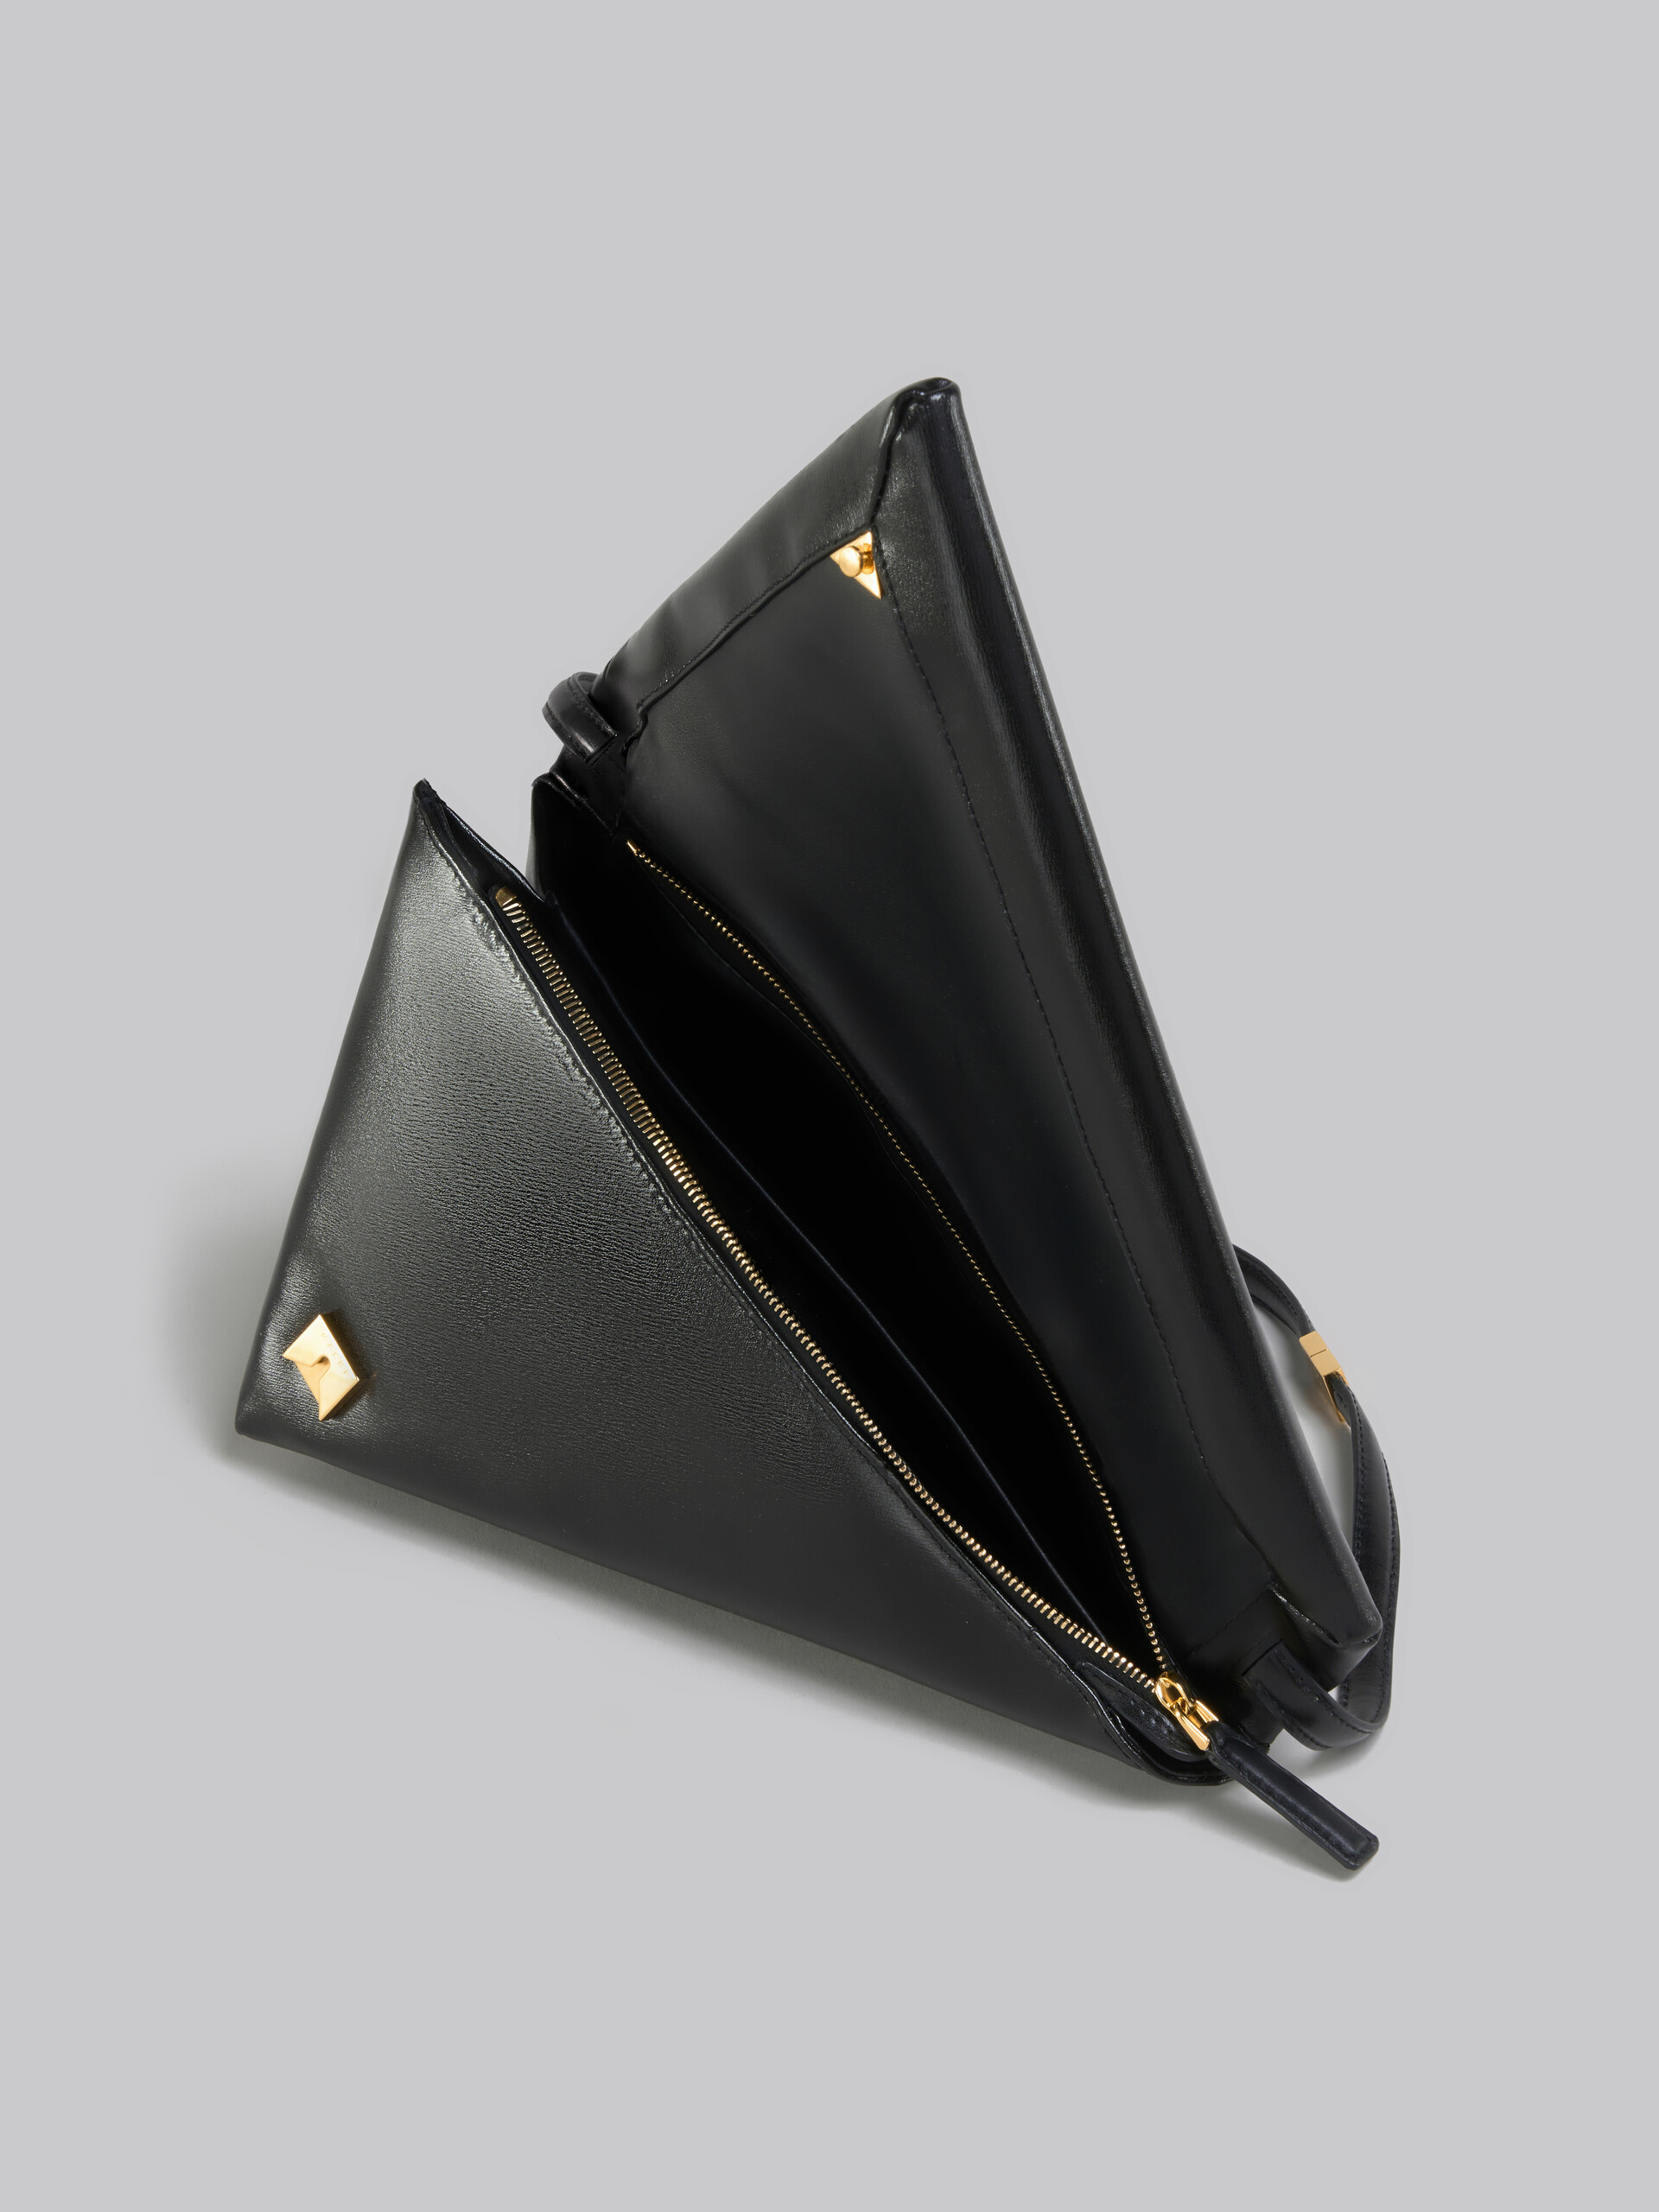 Sac triangulaire Prisma en cuir noir - Sacs portés épaule - Image 4